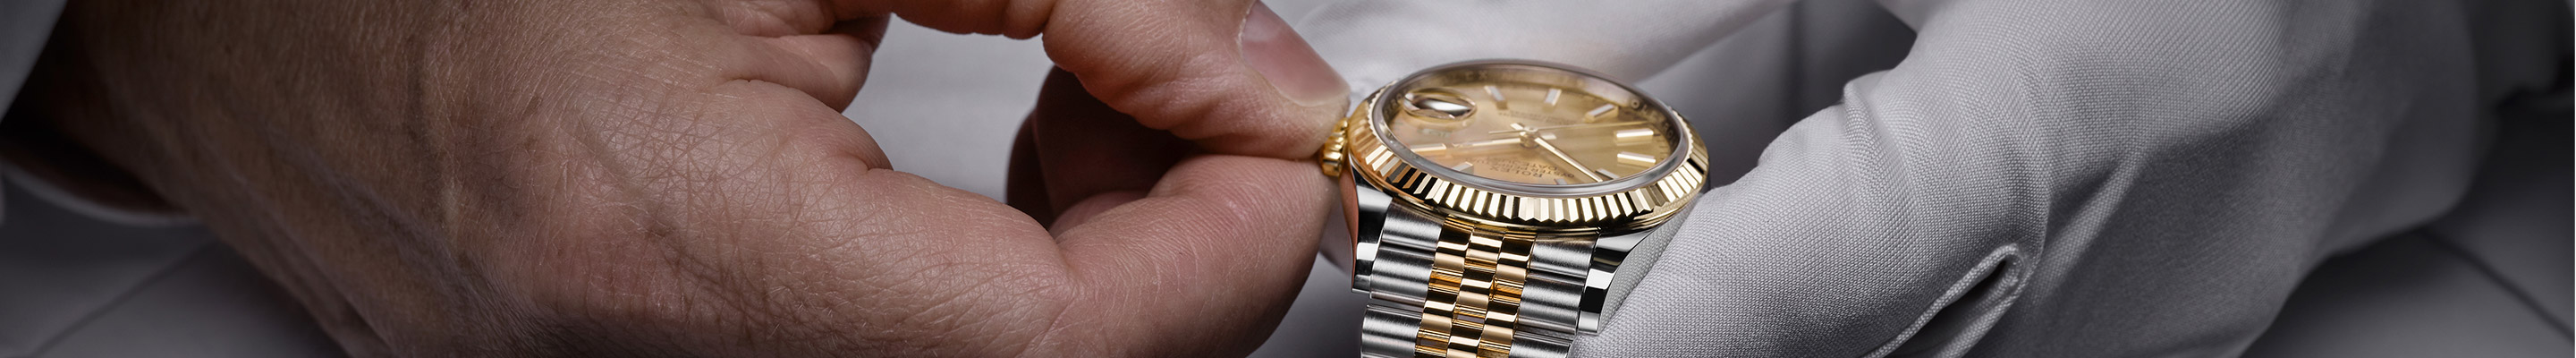 Le service de votre montre Rolex à St Martin, St Maarten et St Barthélemy avec les bijoutiers Goldfinger